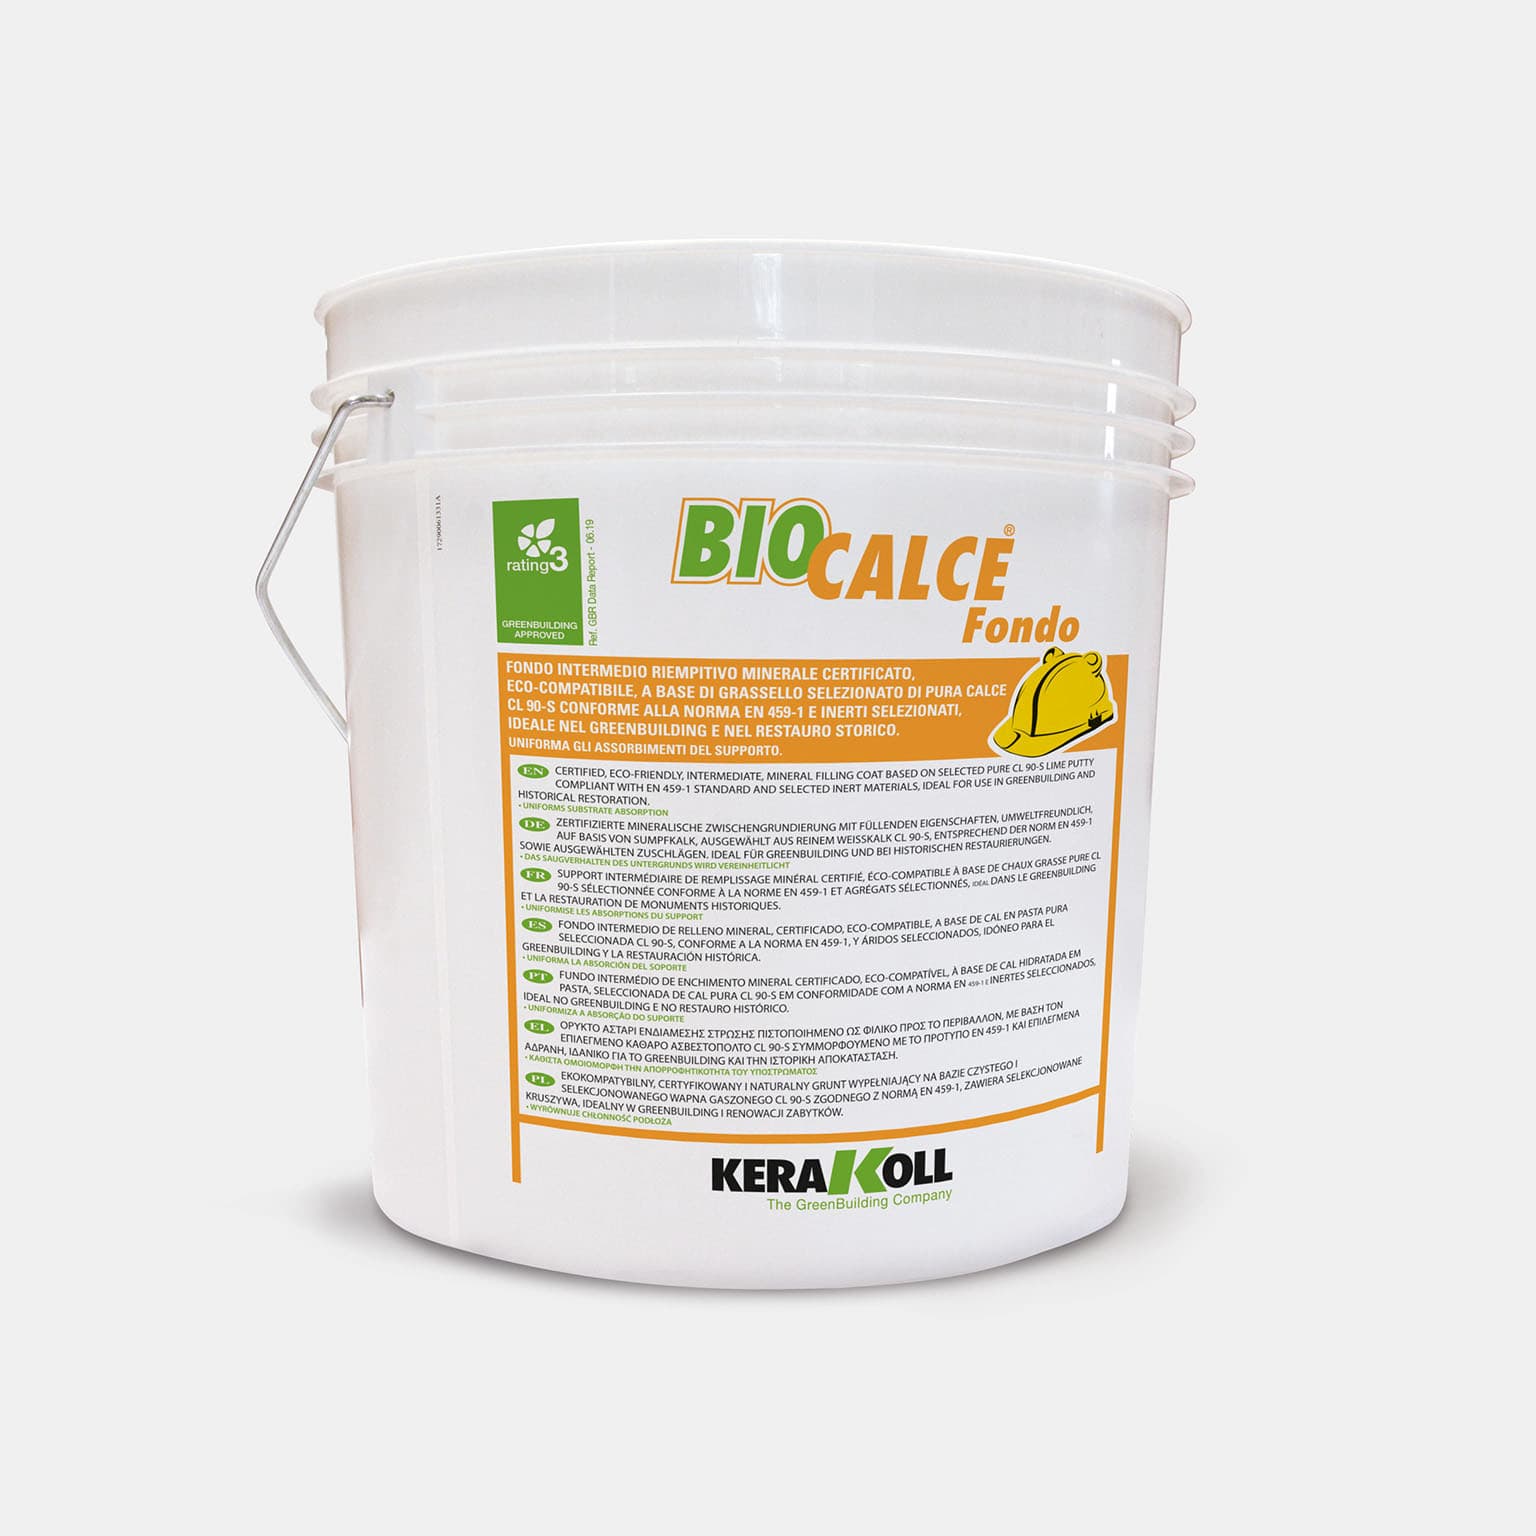 Kerakoll Biocalce Fondo: Tanúsított, öko‑kompatibilis, az EN 459‑1 szabványnak megfelelő válogatott CL 90‑S tiszta mészhabarcs és válogatott inert alapú ásványi köztes feltöltő alap.